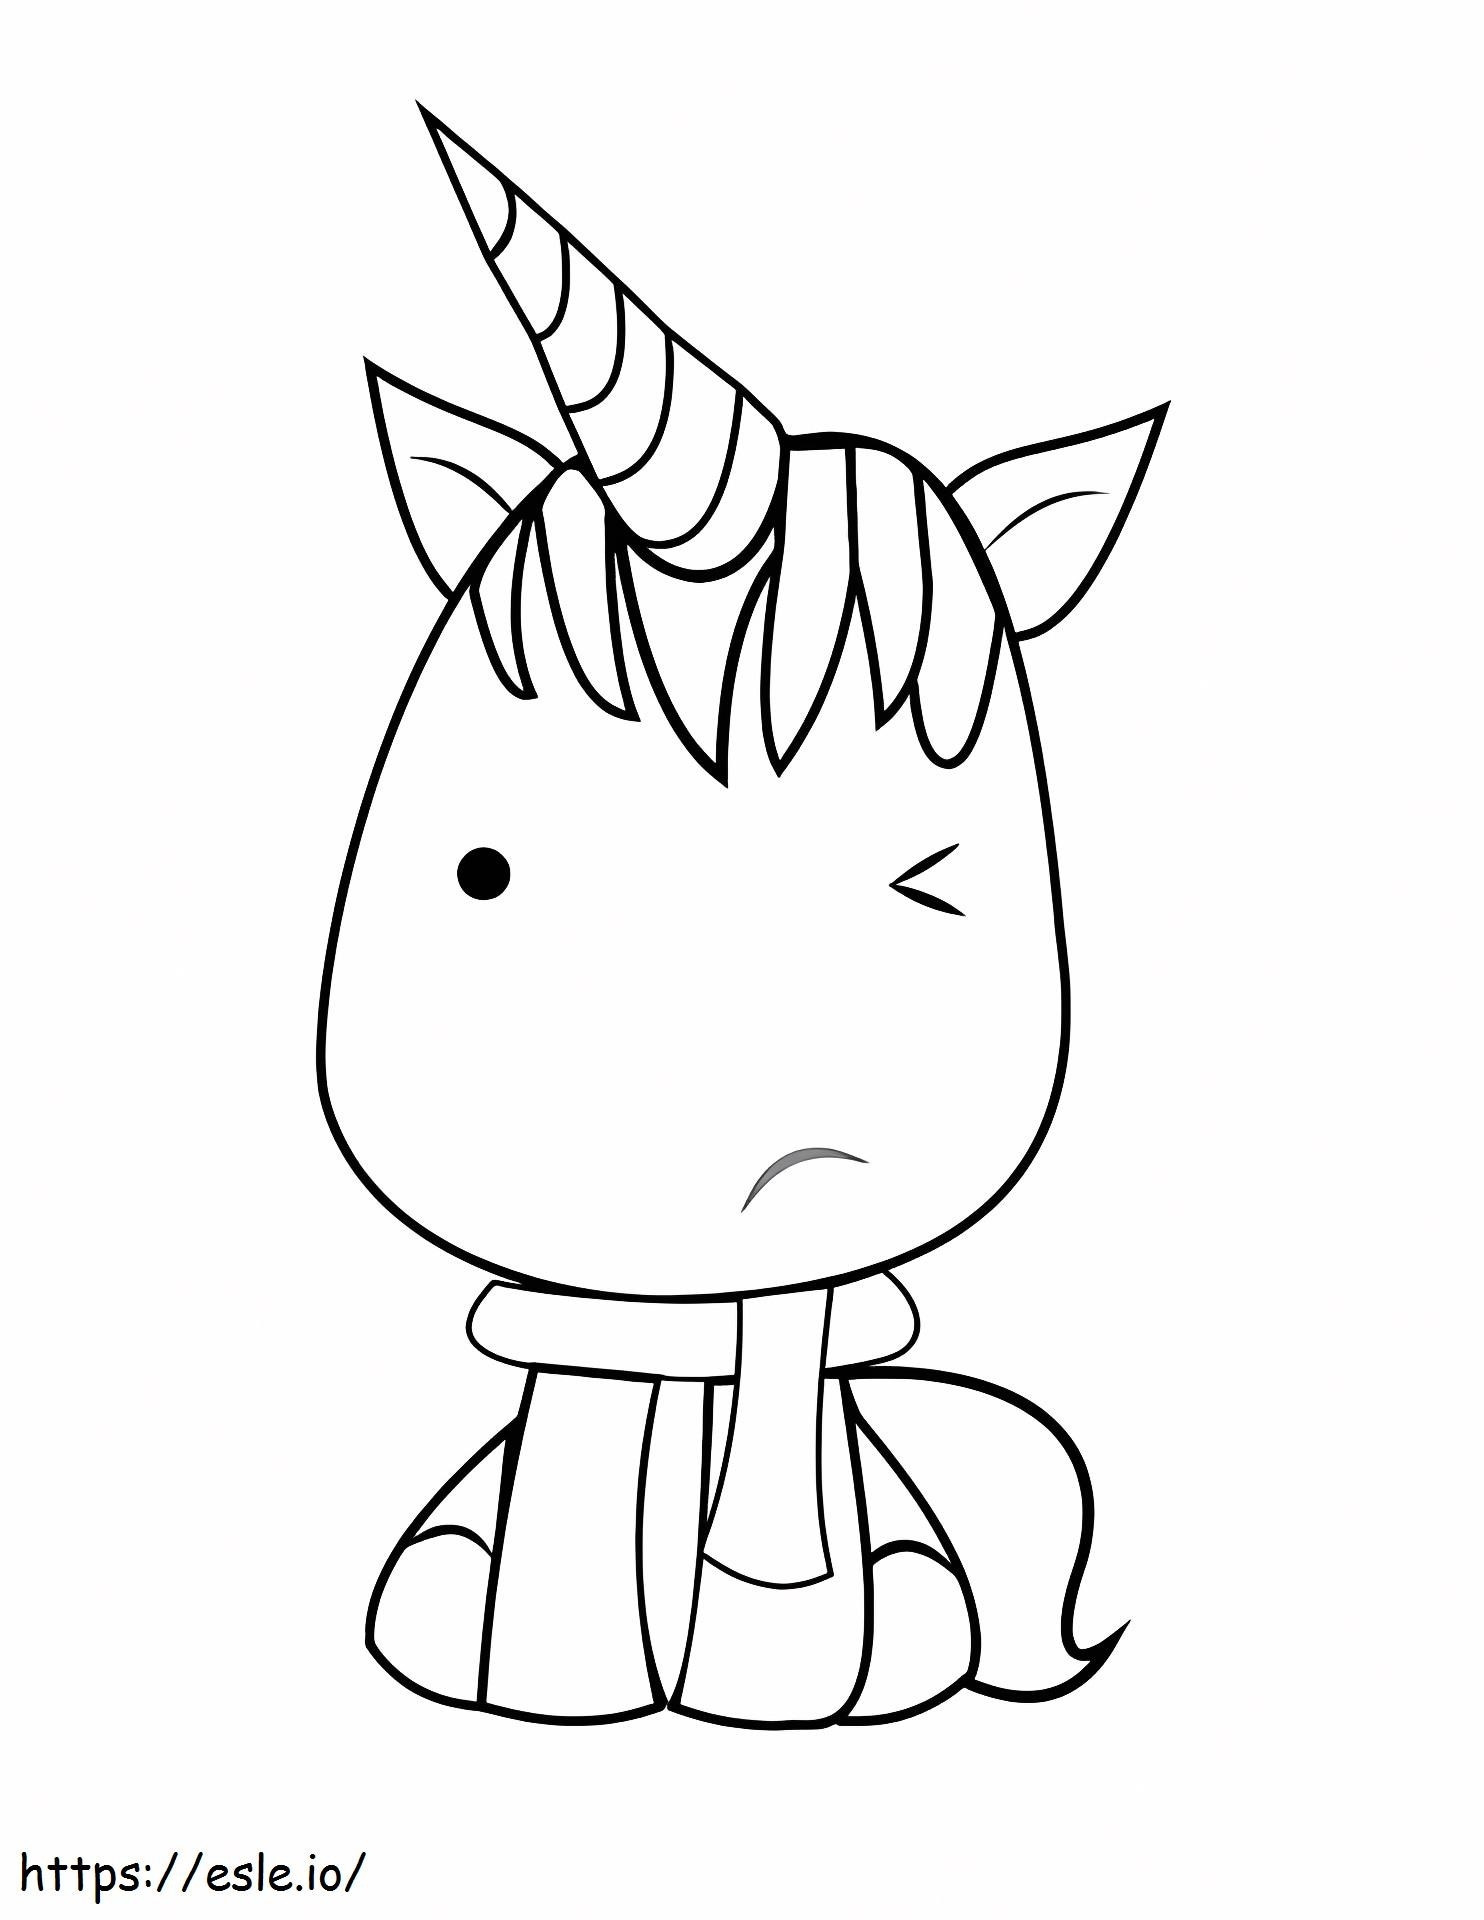 1528876499Kawaii Unicorn coloring page